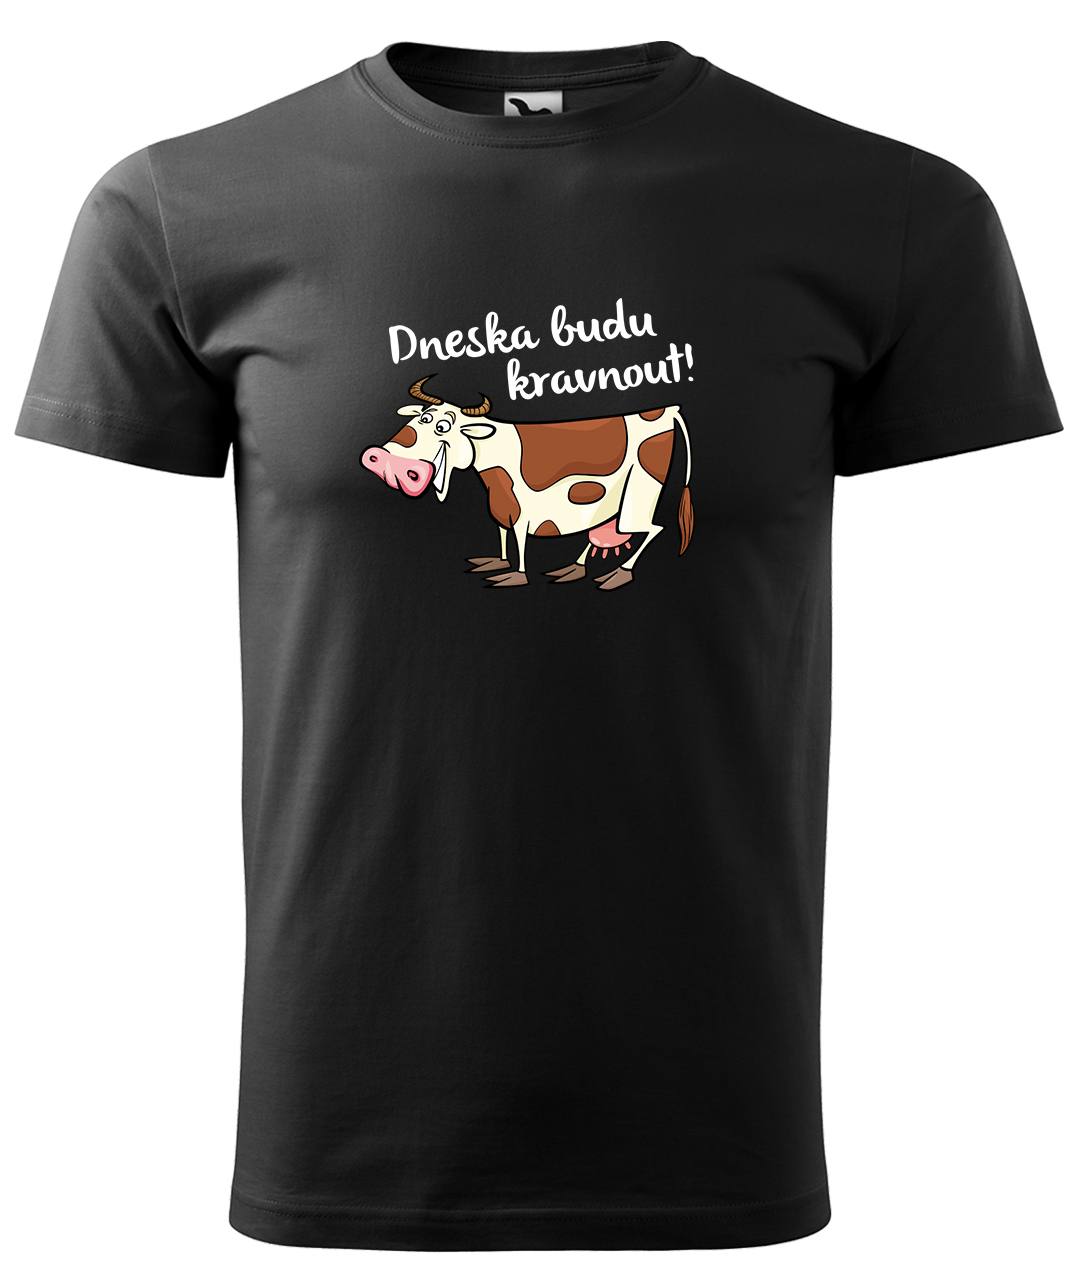 Dětské tričko s krávou - Dneska budu kravnout! Velikost: 4 roky / 110 cm, Barva: Černá (01), Délka rukávu: Krátký rukáv